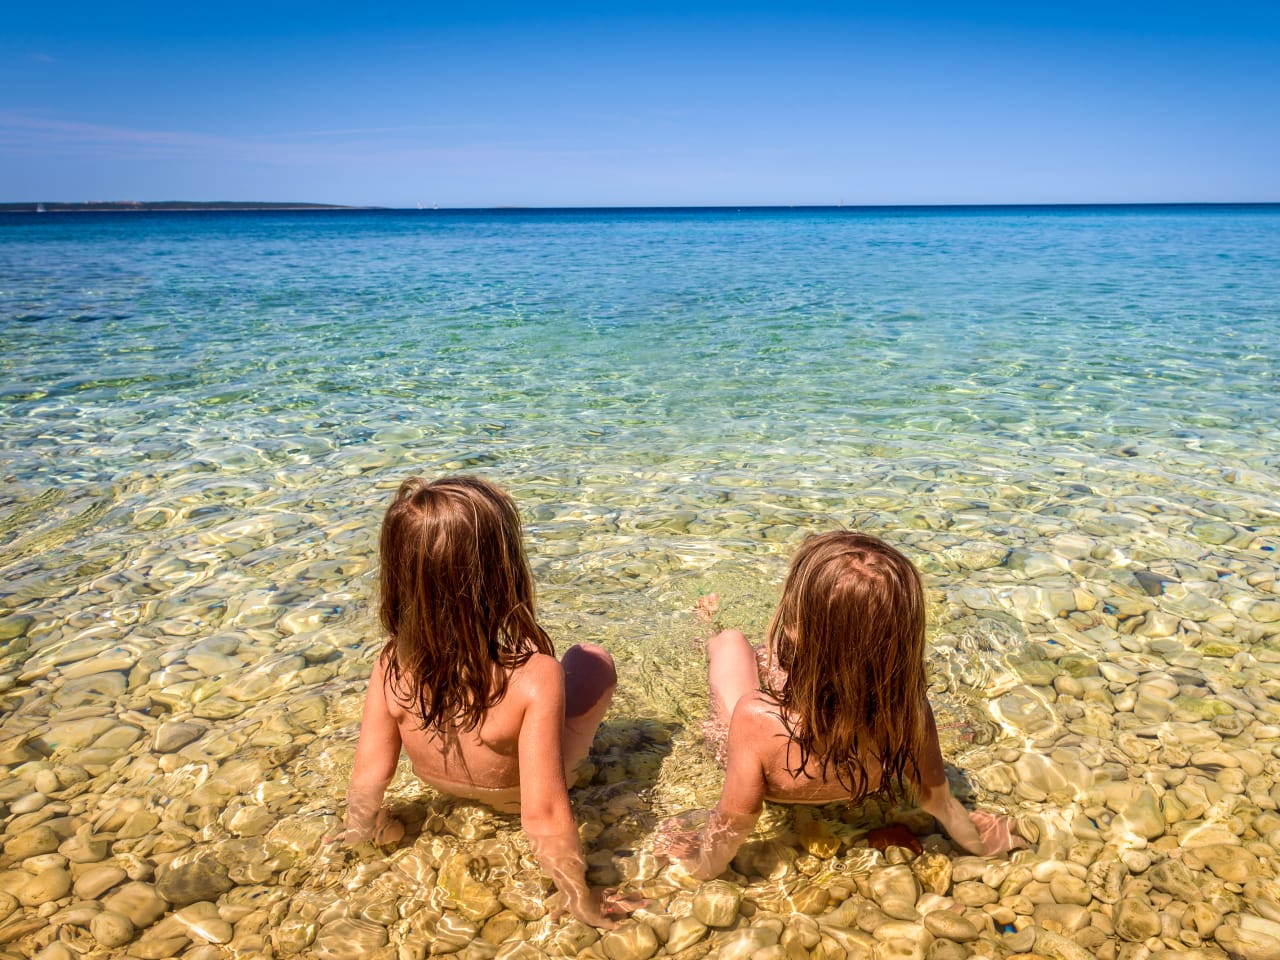 Kinder am Strand. Insel Pag, Kroatien